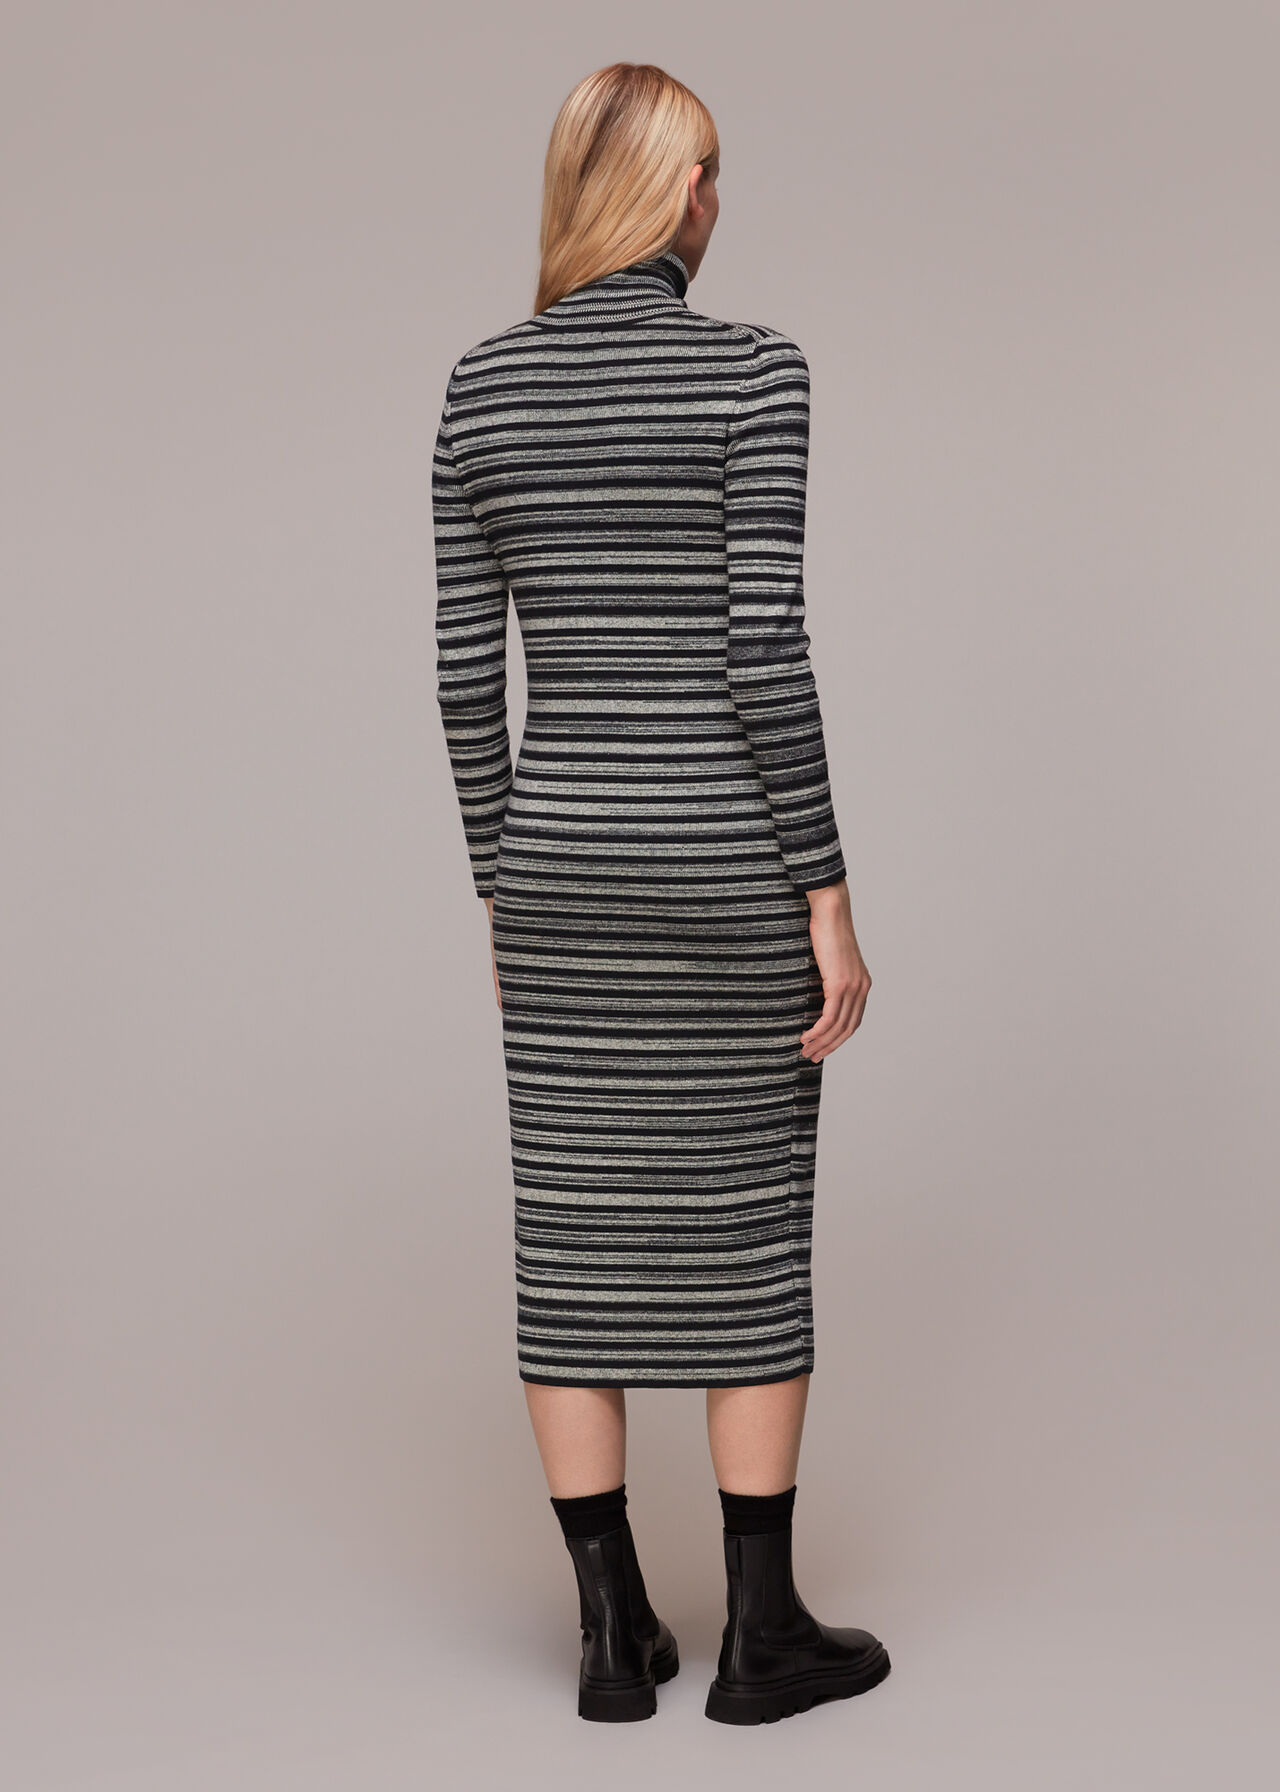 Stripe Midi Knit Dress